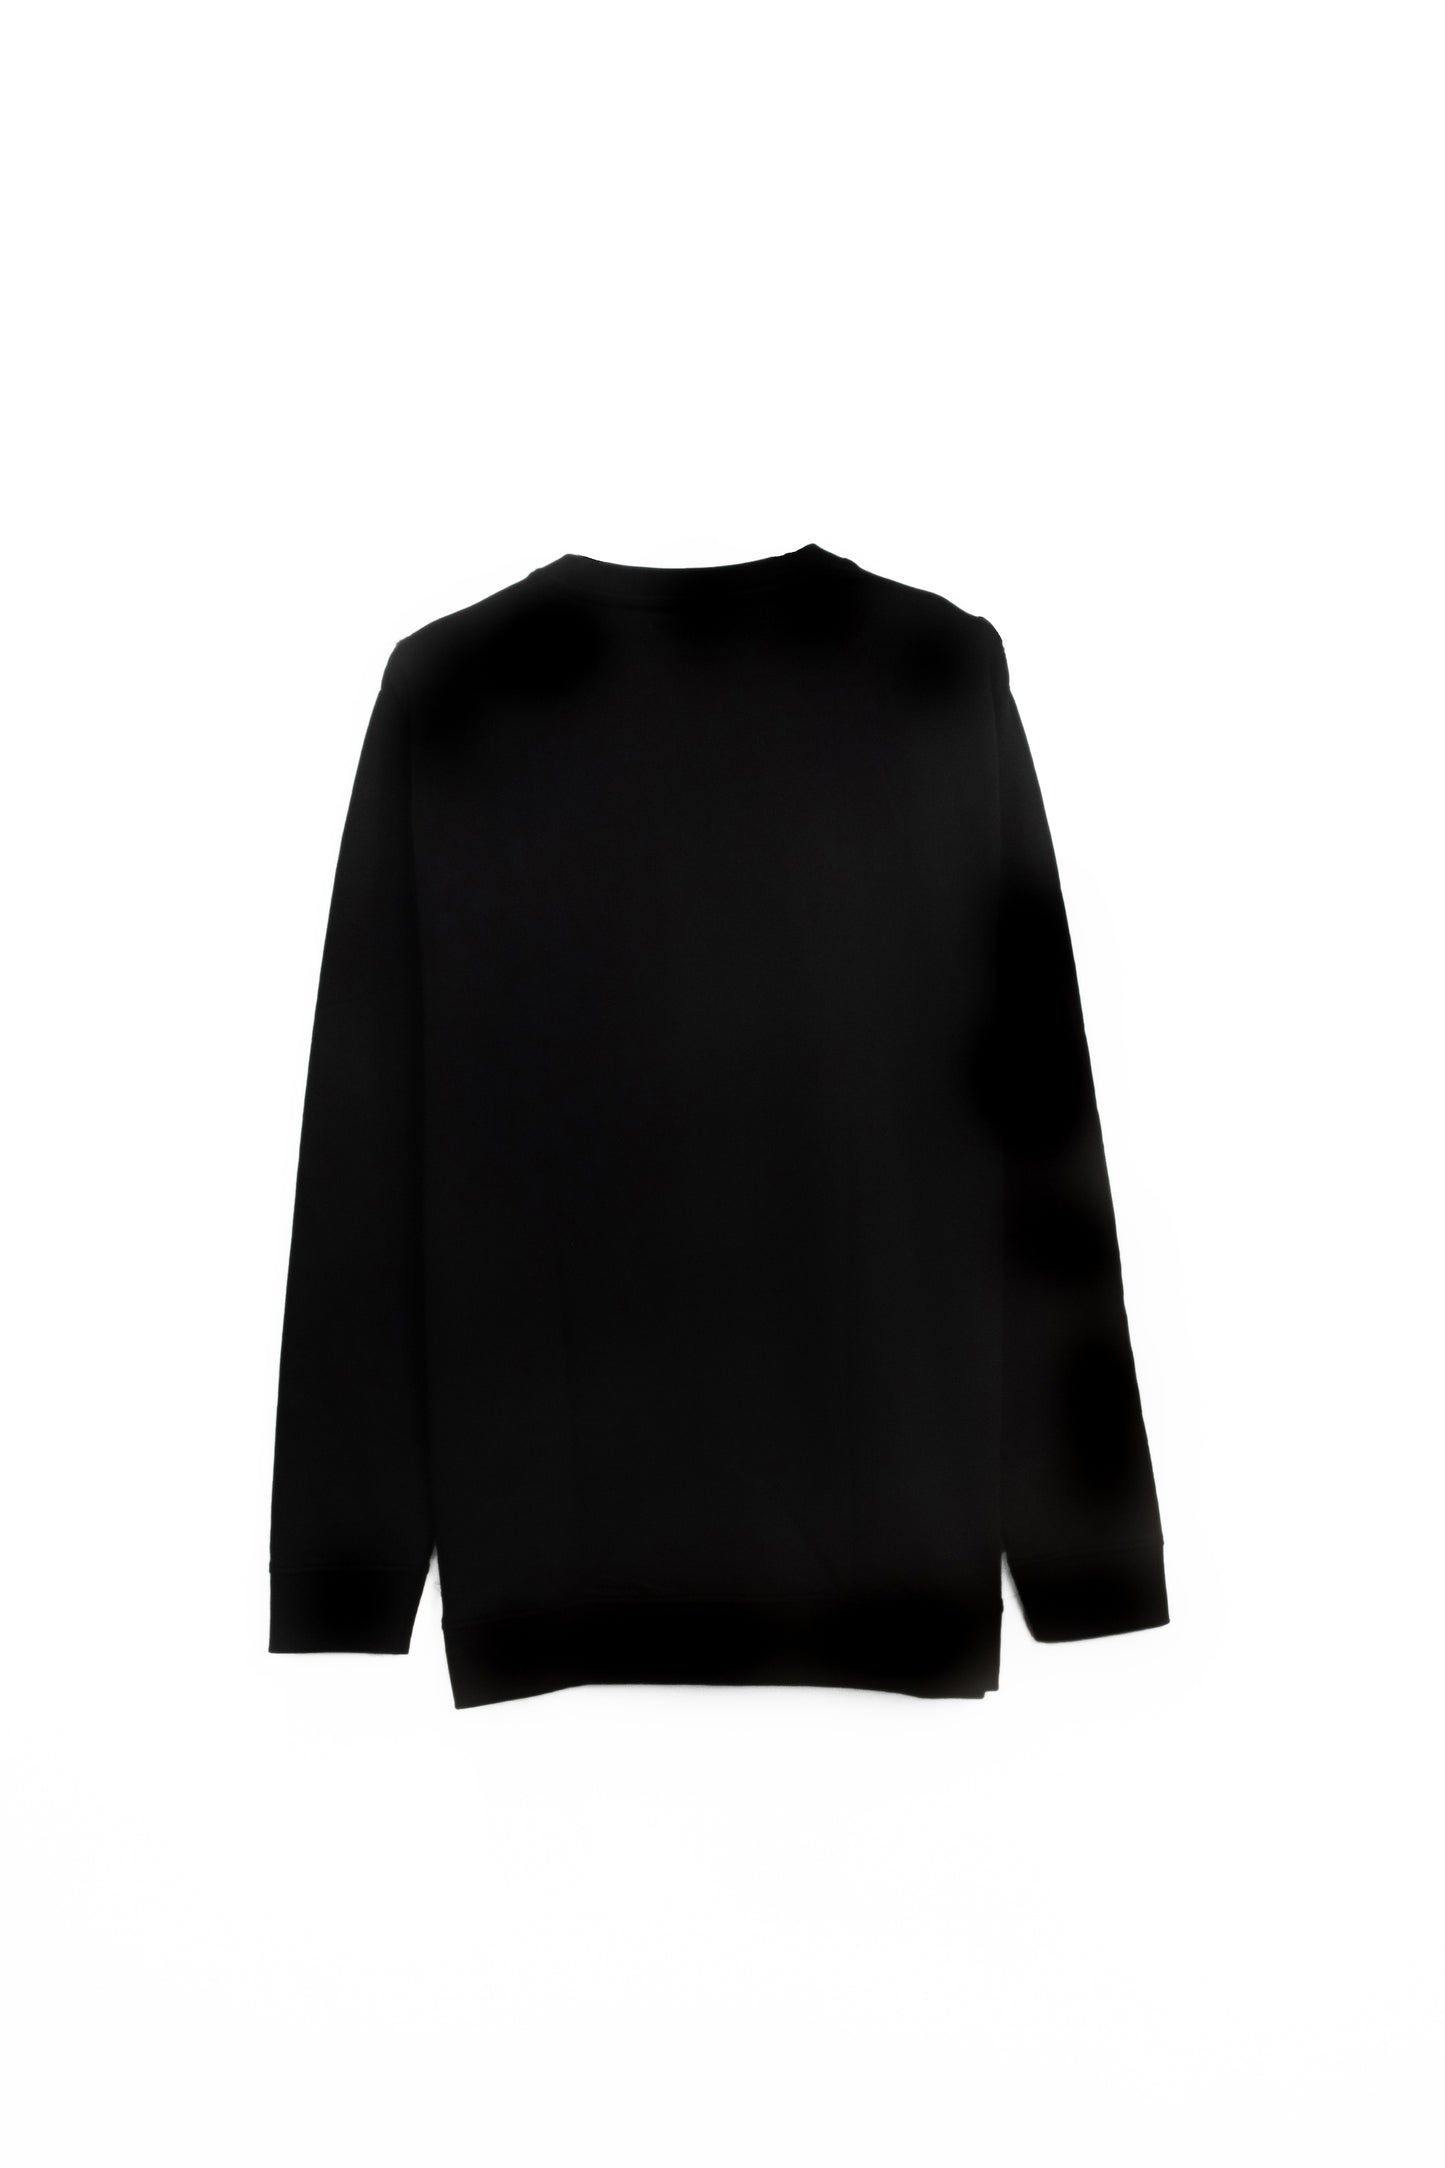 WIRED BLACK Sweatshirt (UNISEX)